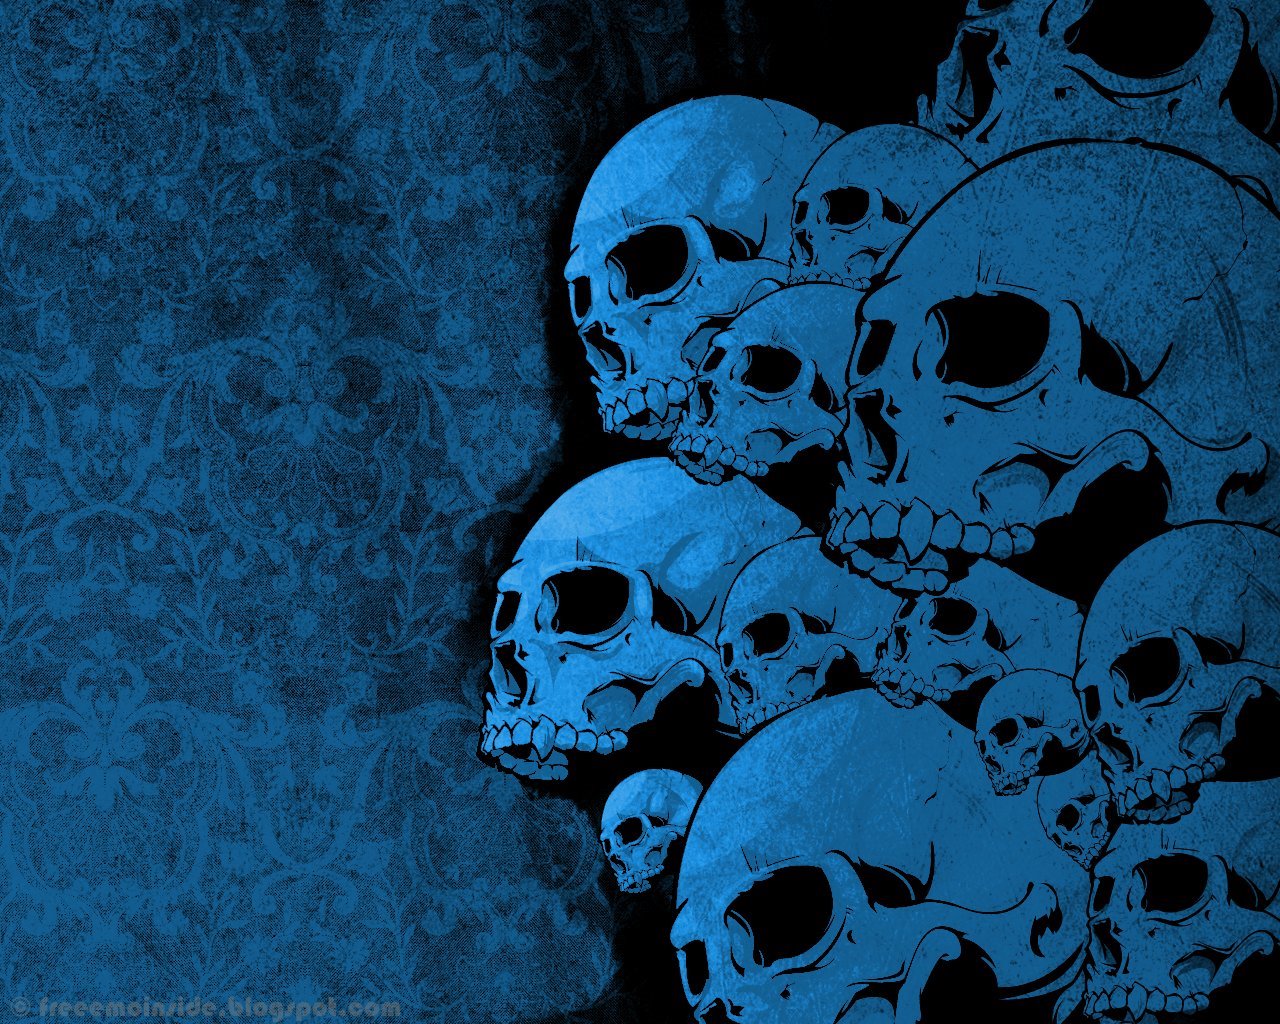 http://2.bp.blogspot.com/-Si3y0NDtj5g/TWDm3buxKNI/AAAAAAAADf4/O1V-jAdUwds/s1600/dark-skull-art.jpg